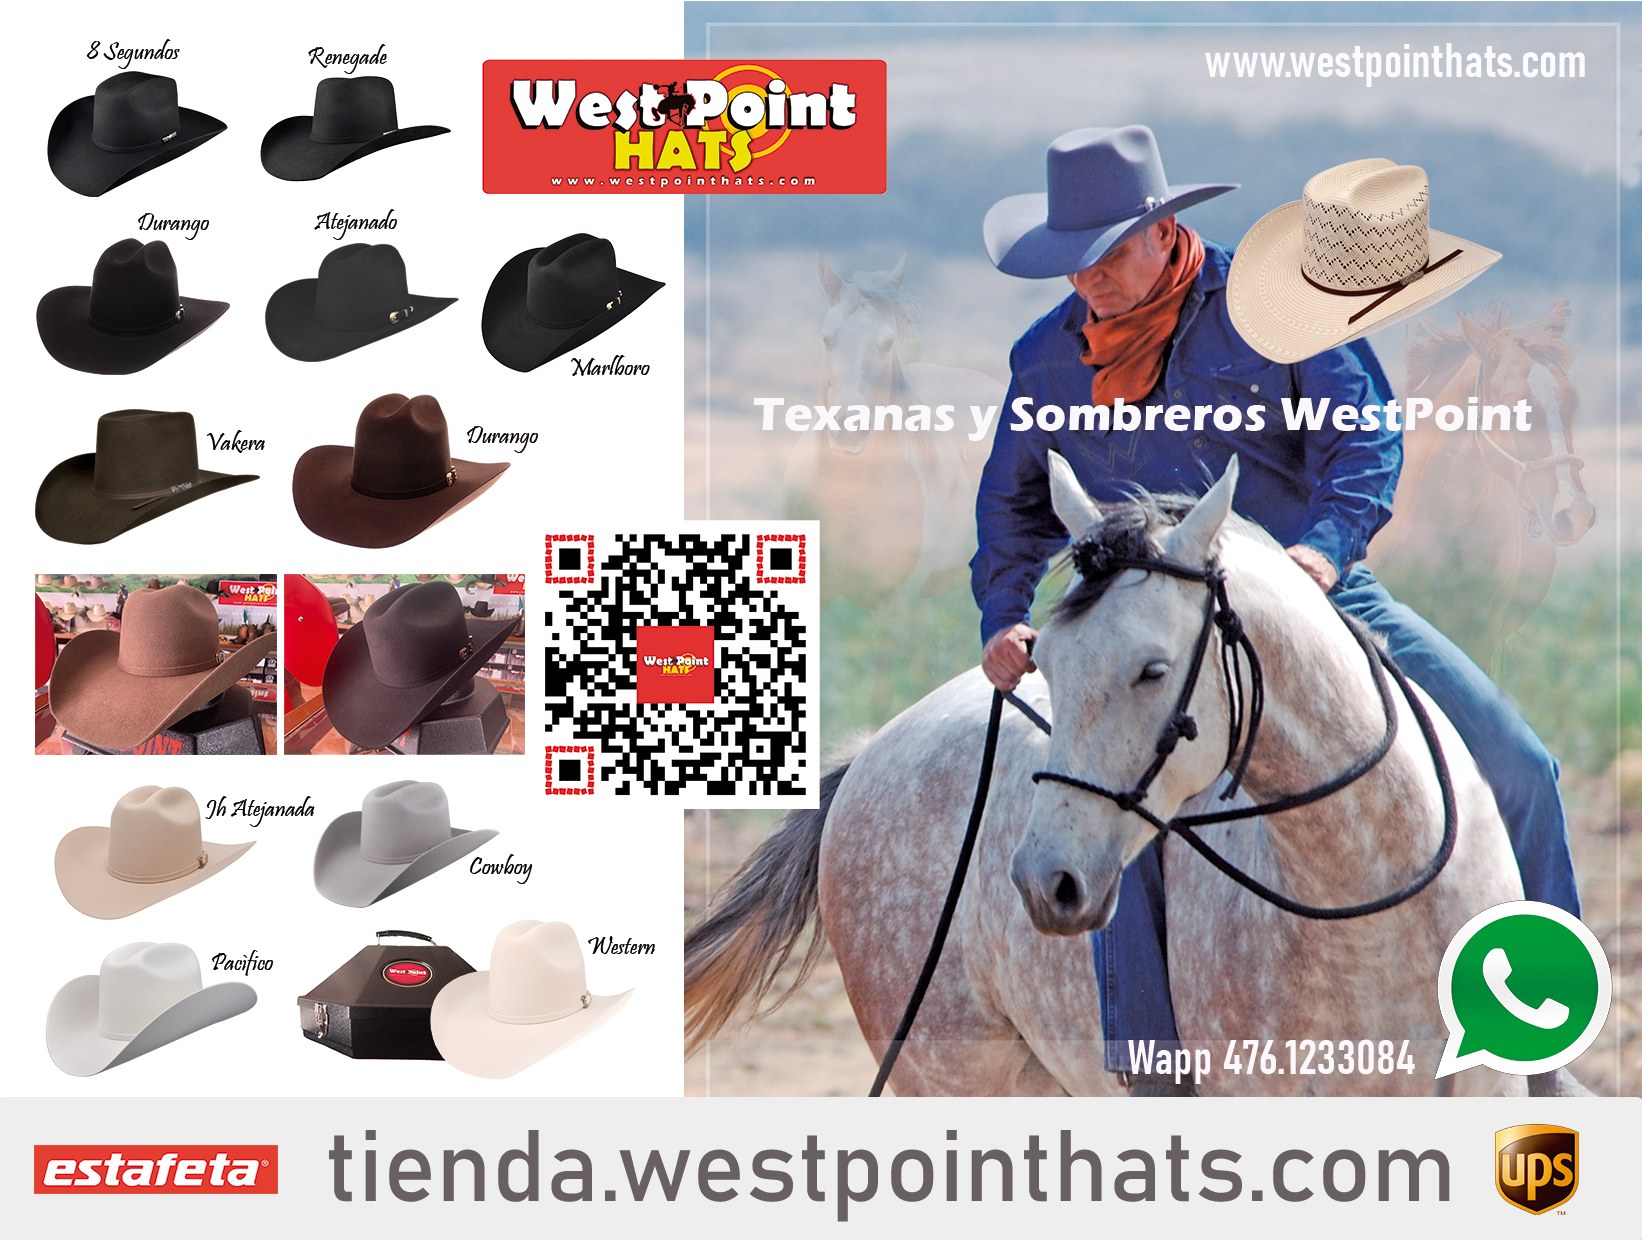 Tienda en línea WestPointHats, Texanas y Sombreros